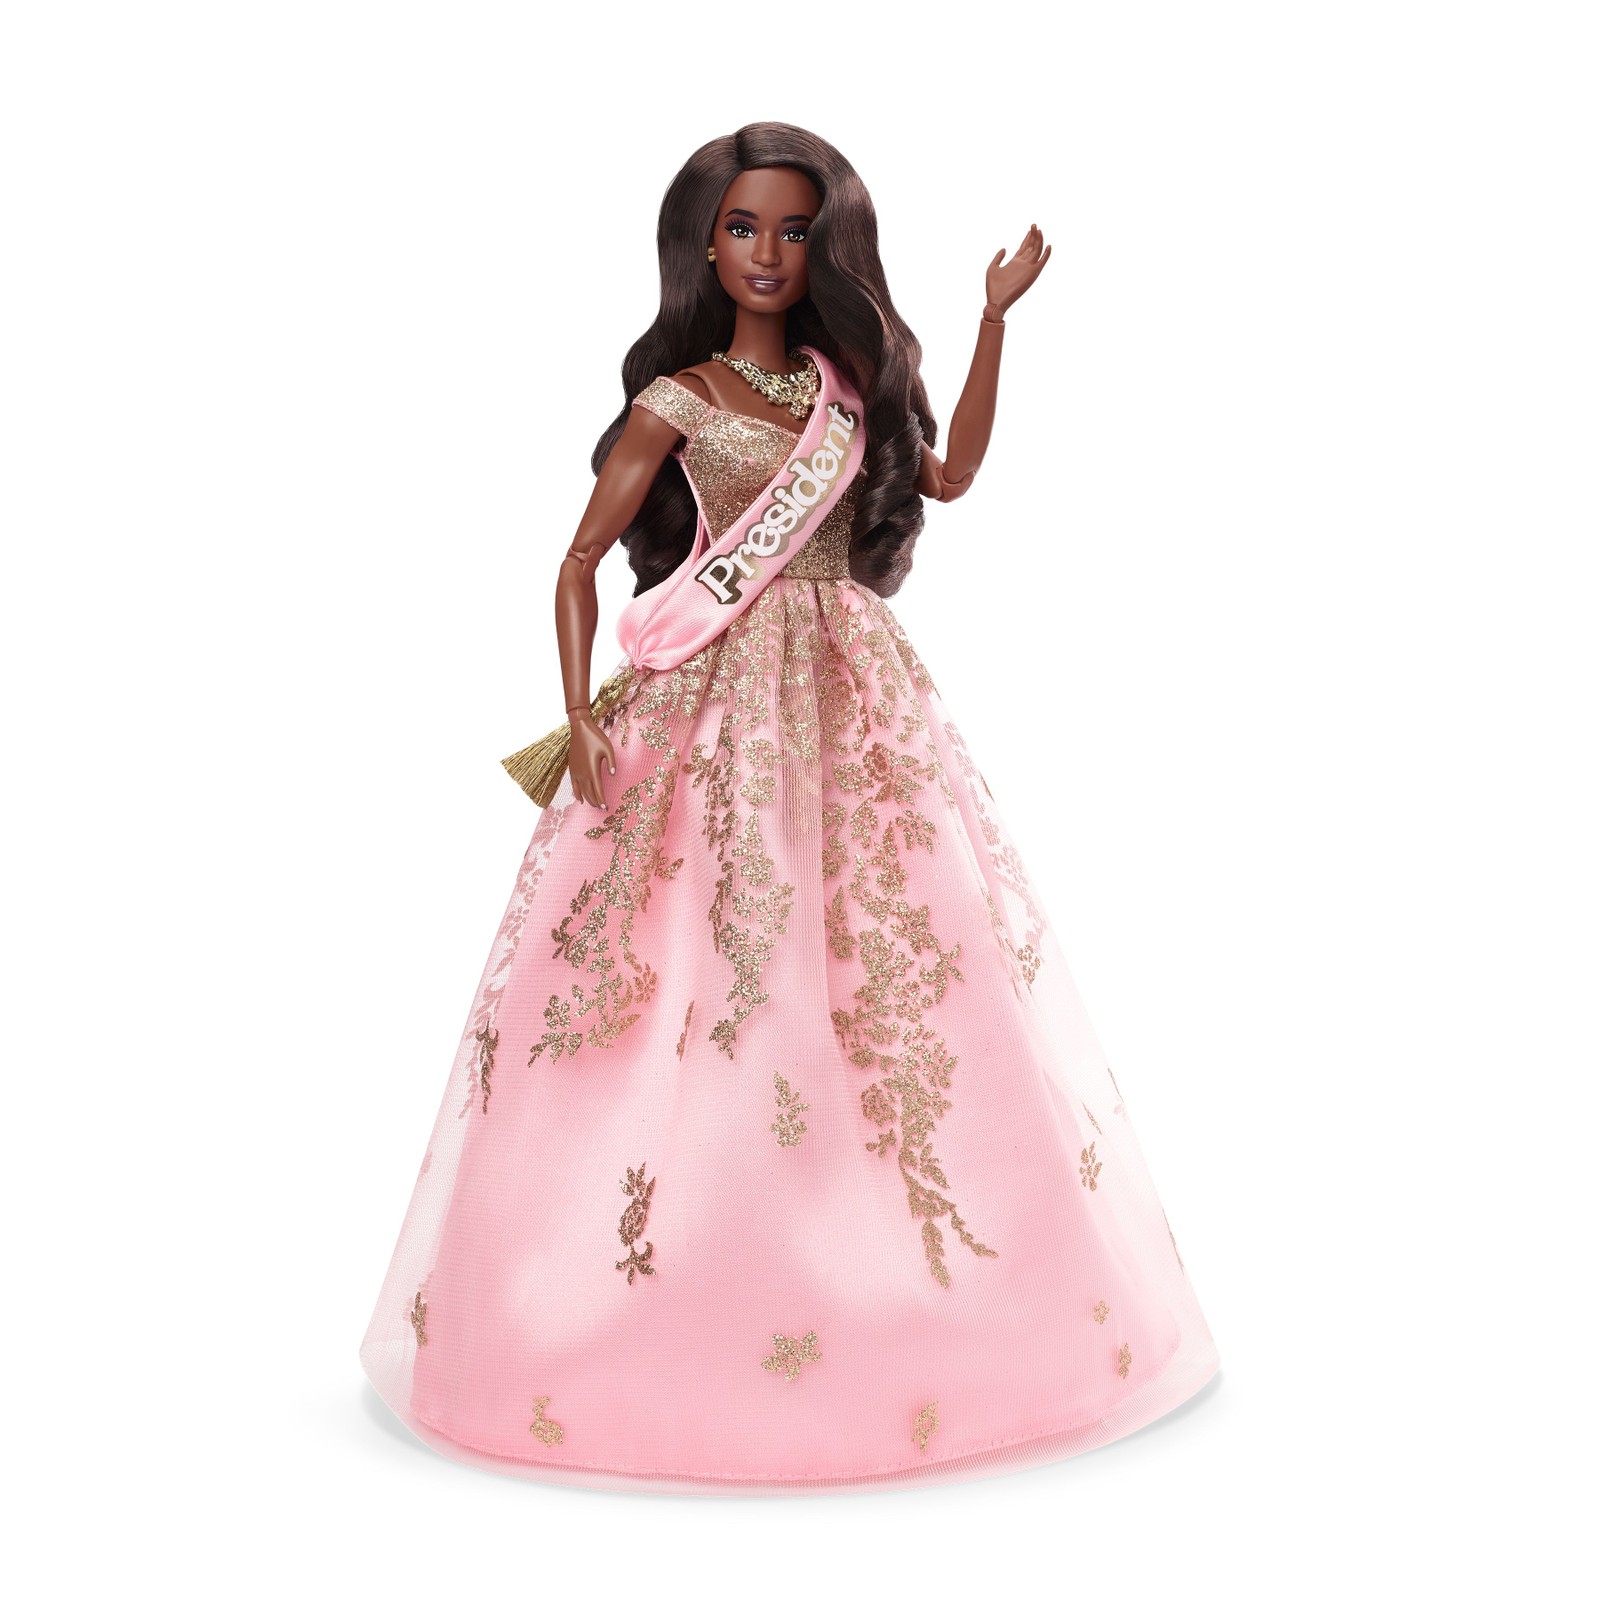 A Barbie presidente, igual à personagem do filme — Foto: Divulgação